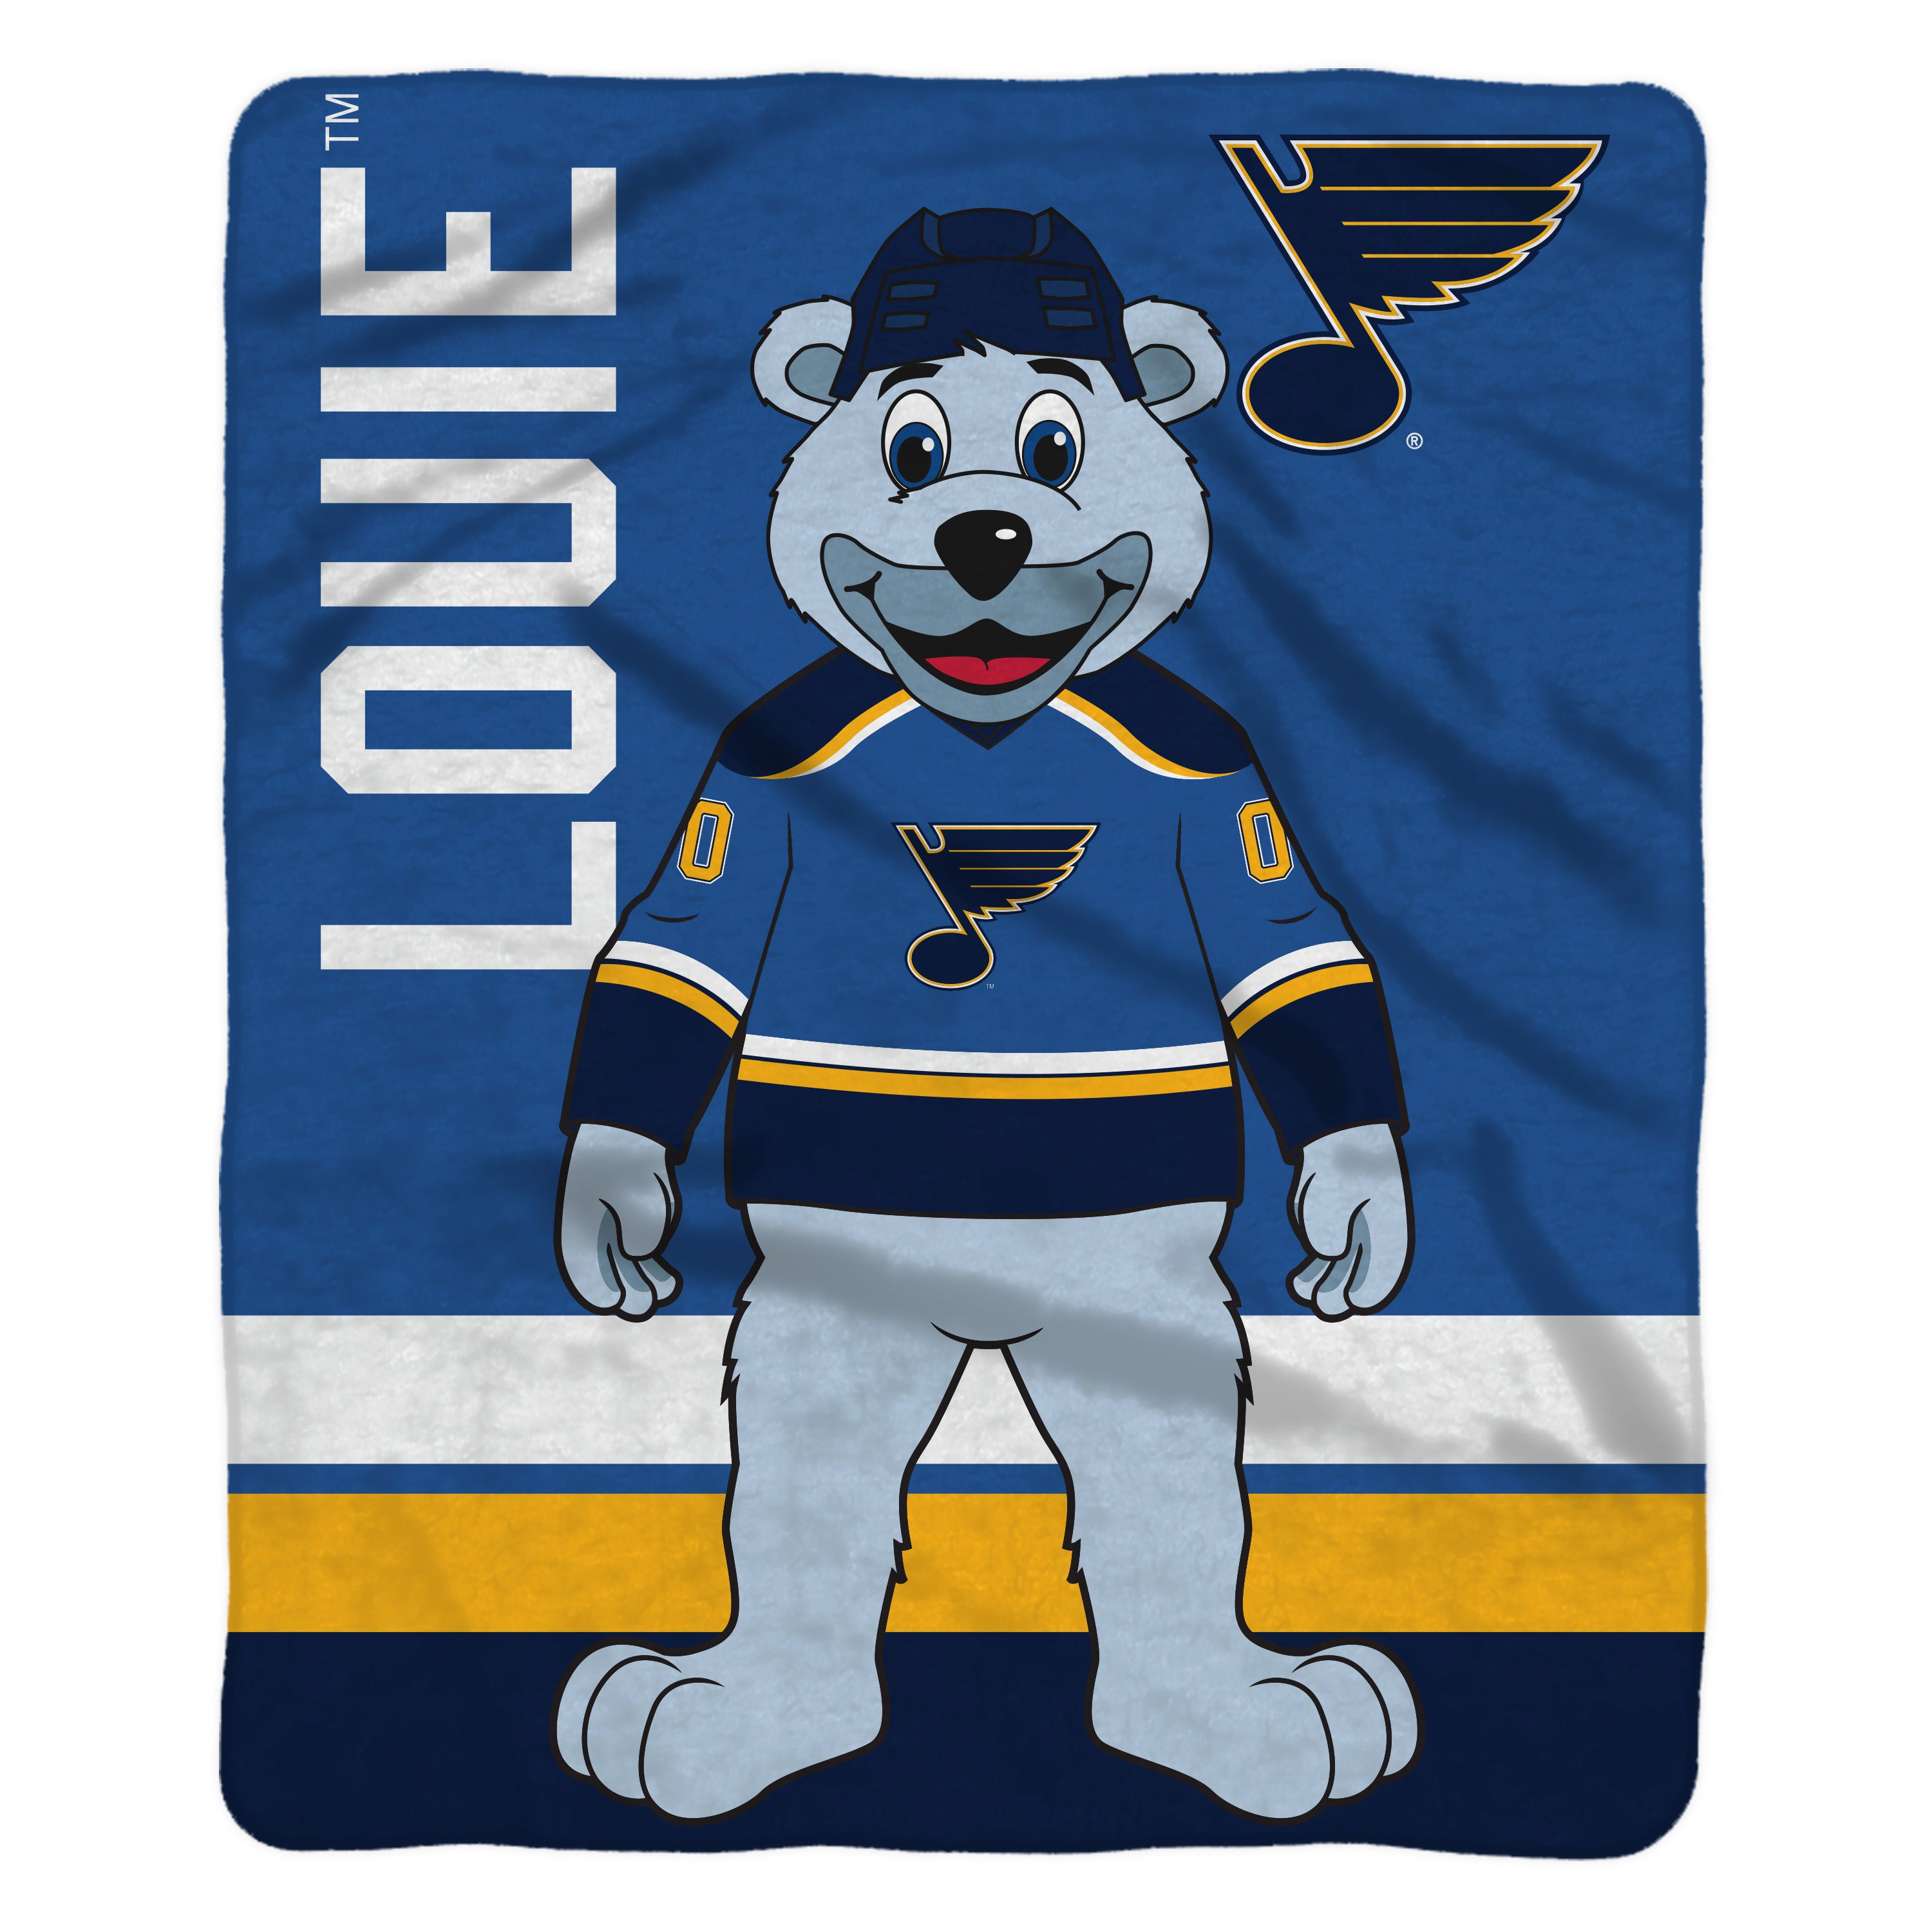 Louie - St. Louis Blues Mascot